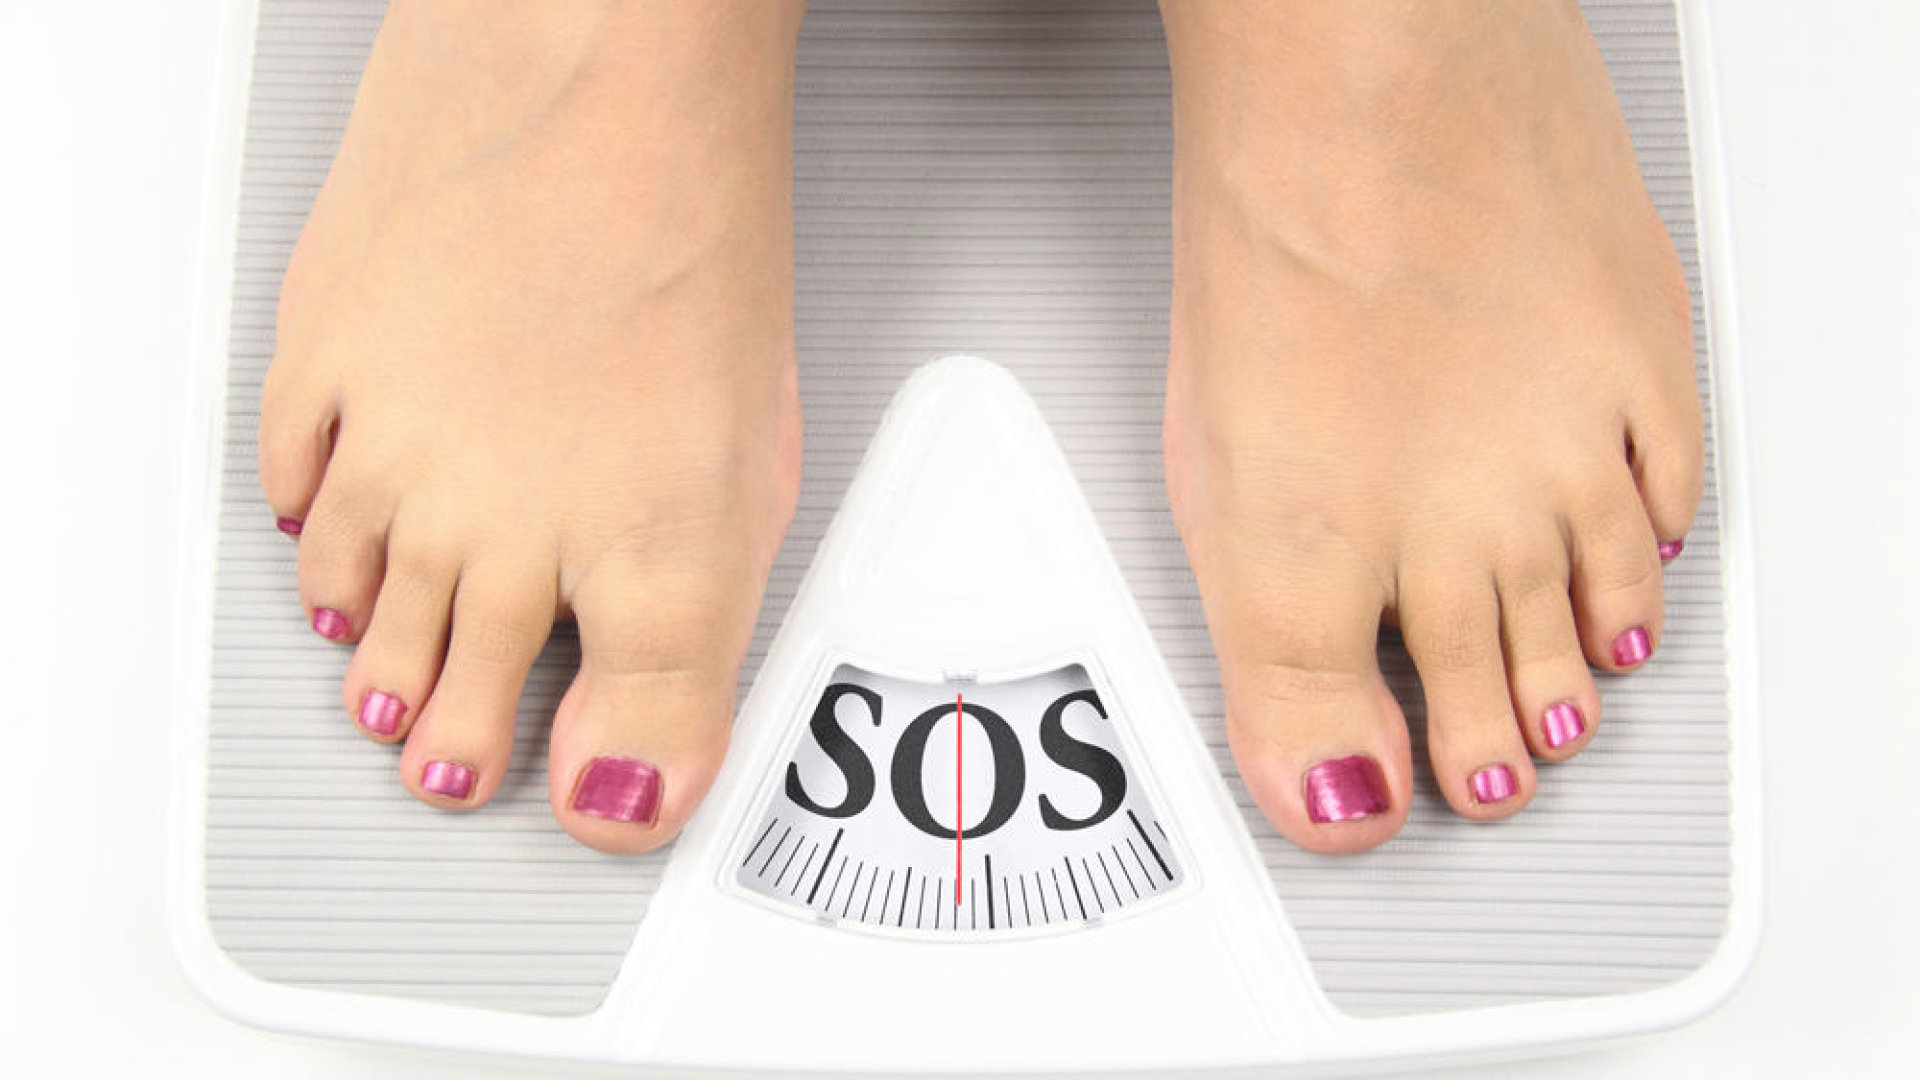 vienas kg numesti svorio riebalų nuostolių mažinimo veikla